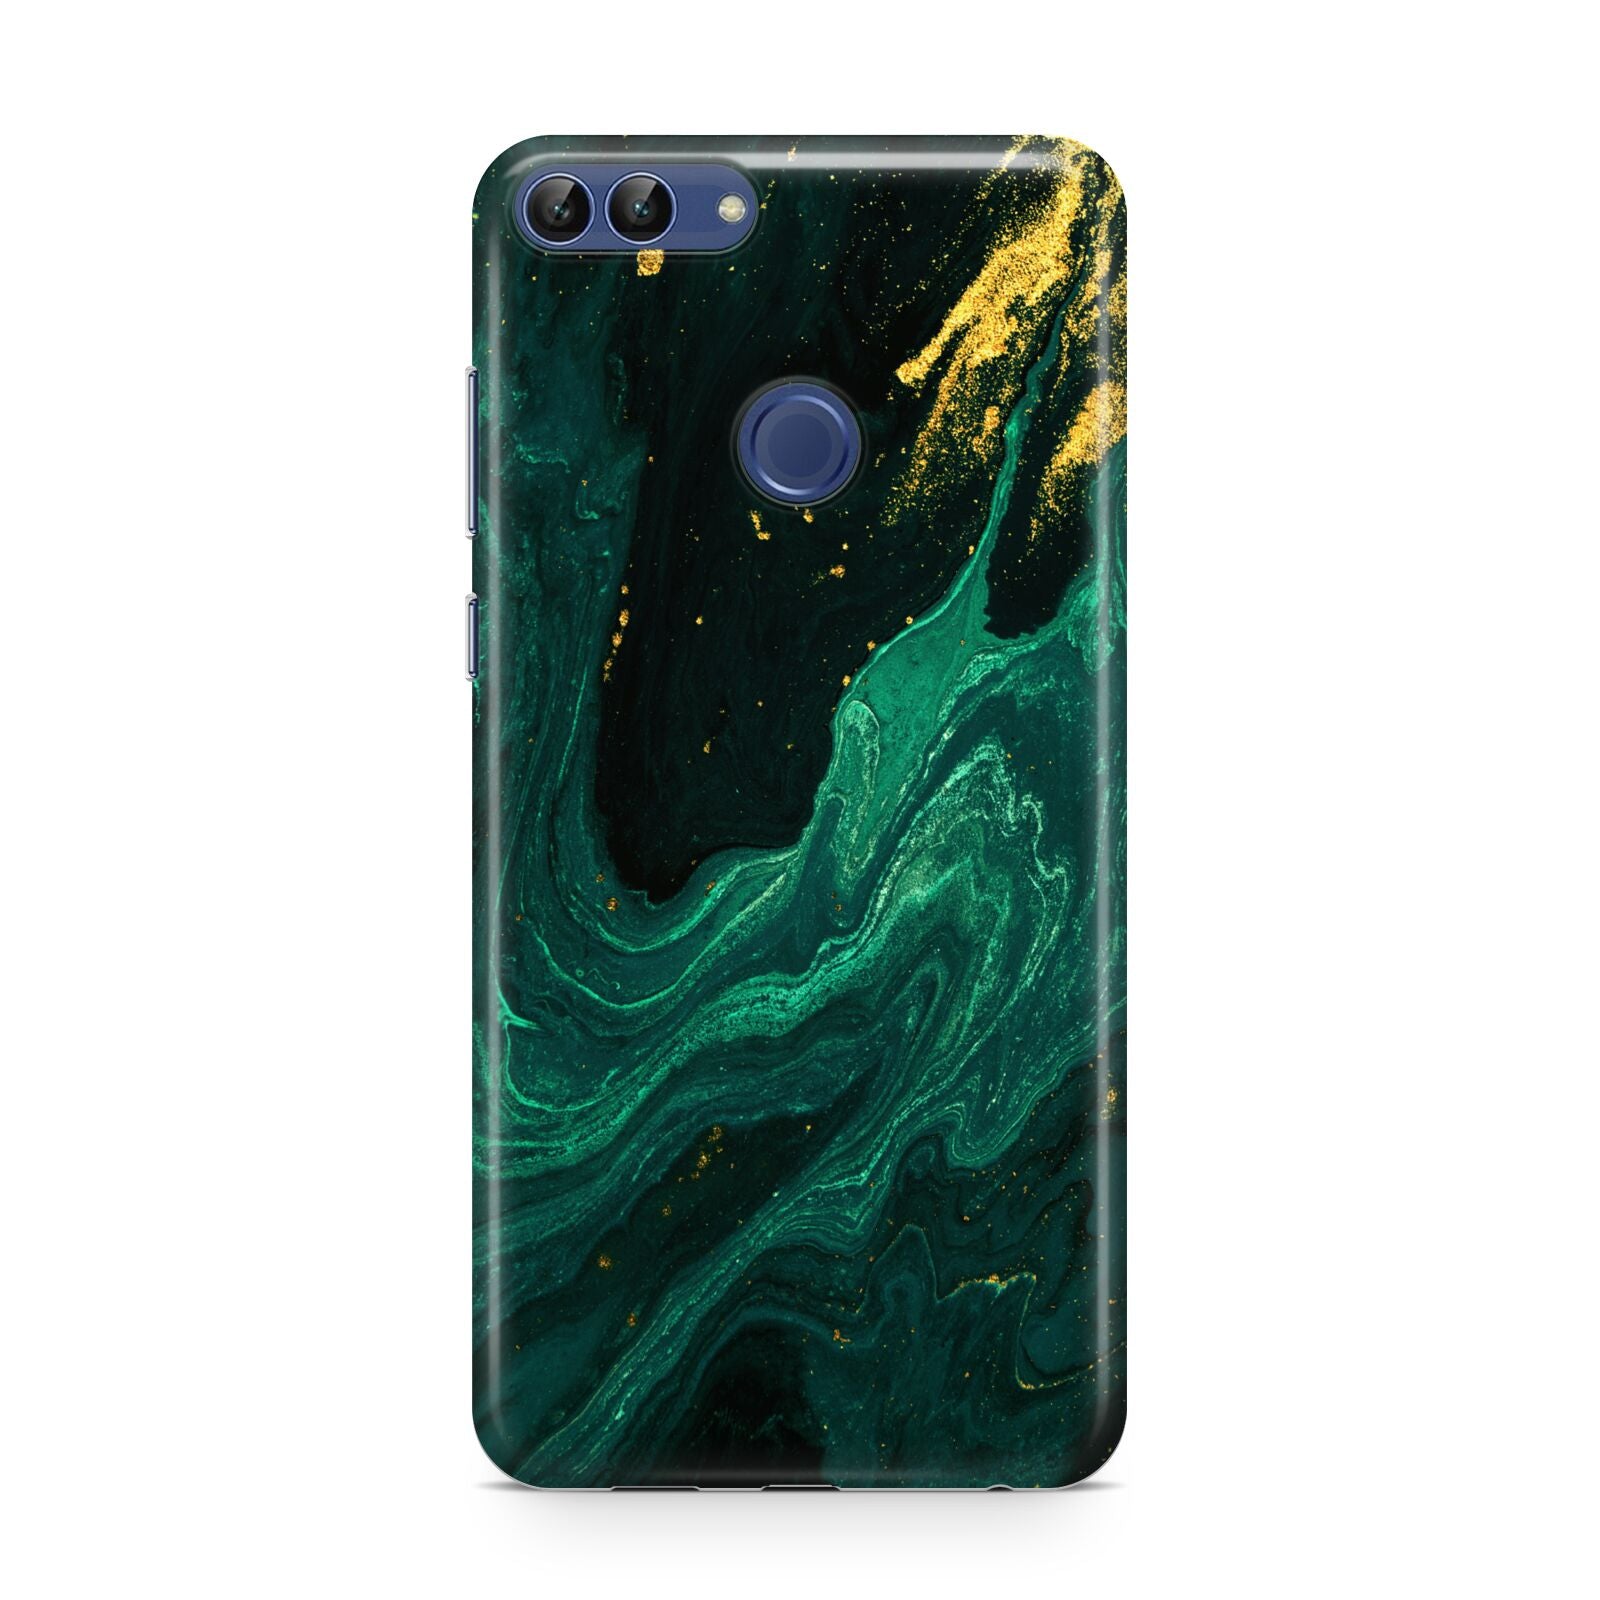 Emerald Green Huawei P Smart Case